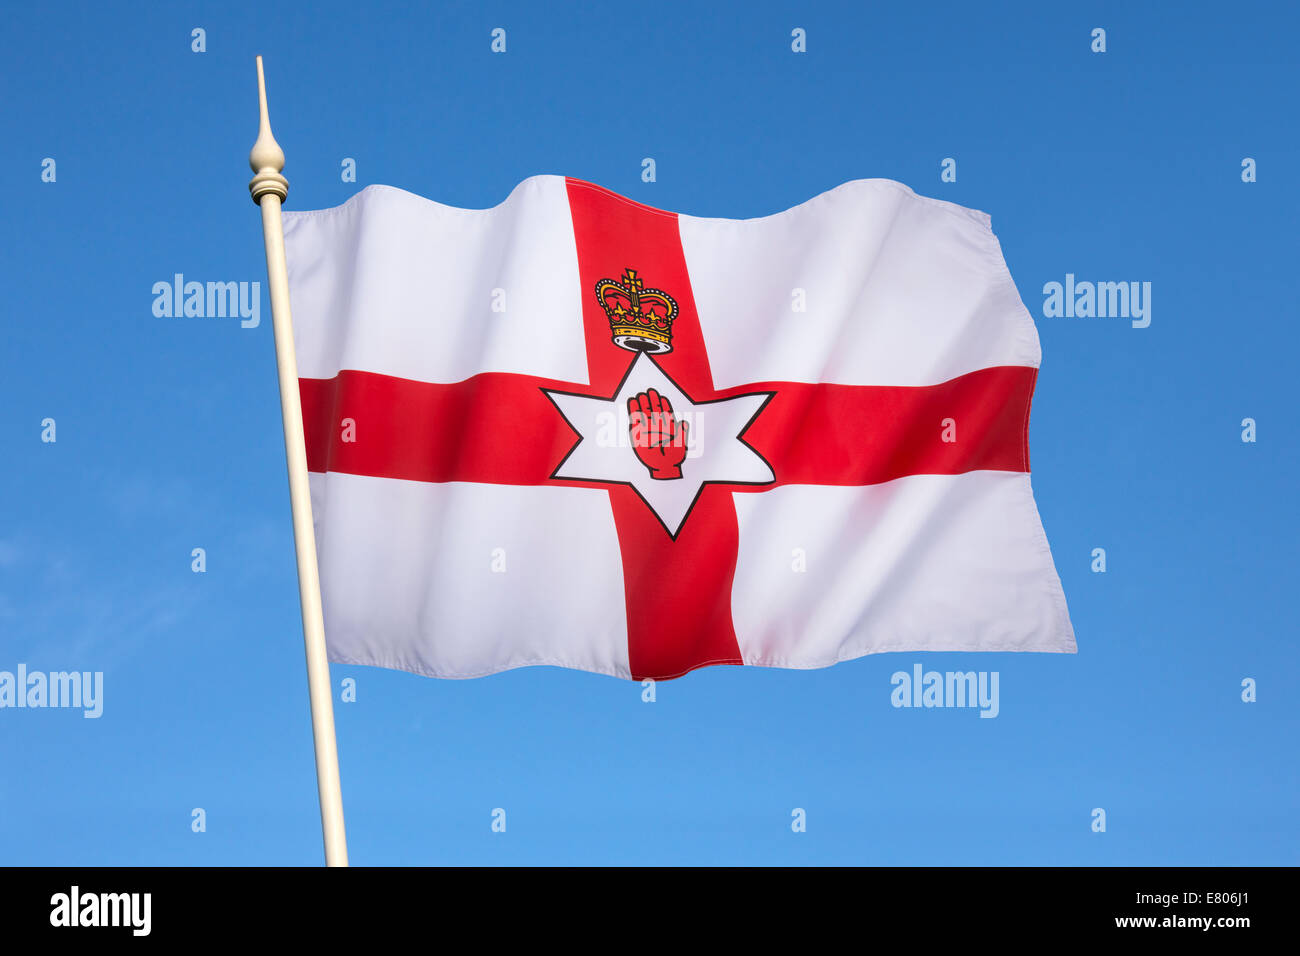 Pabellón del Gobierno de Irlanda del Norte. También conocido como el Ulster Banner. Irlanda del Norte forma parte del Reino Unido Foto de stock